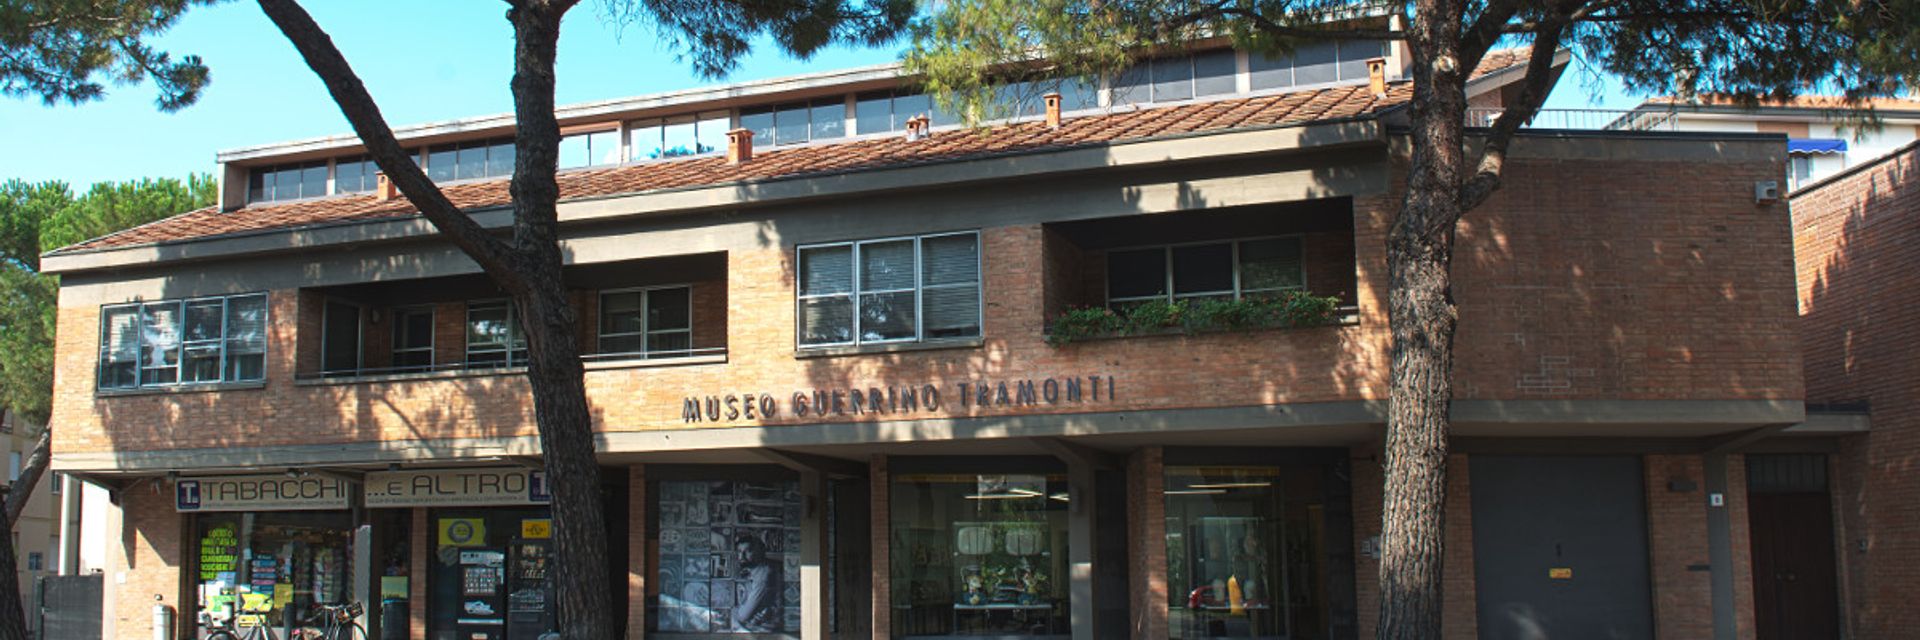 Museo Tramonti Guerrino